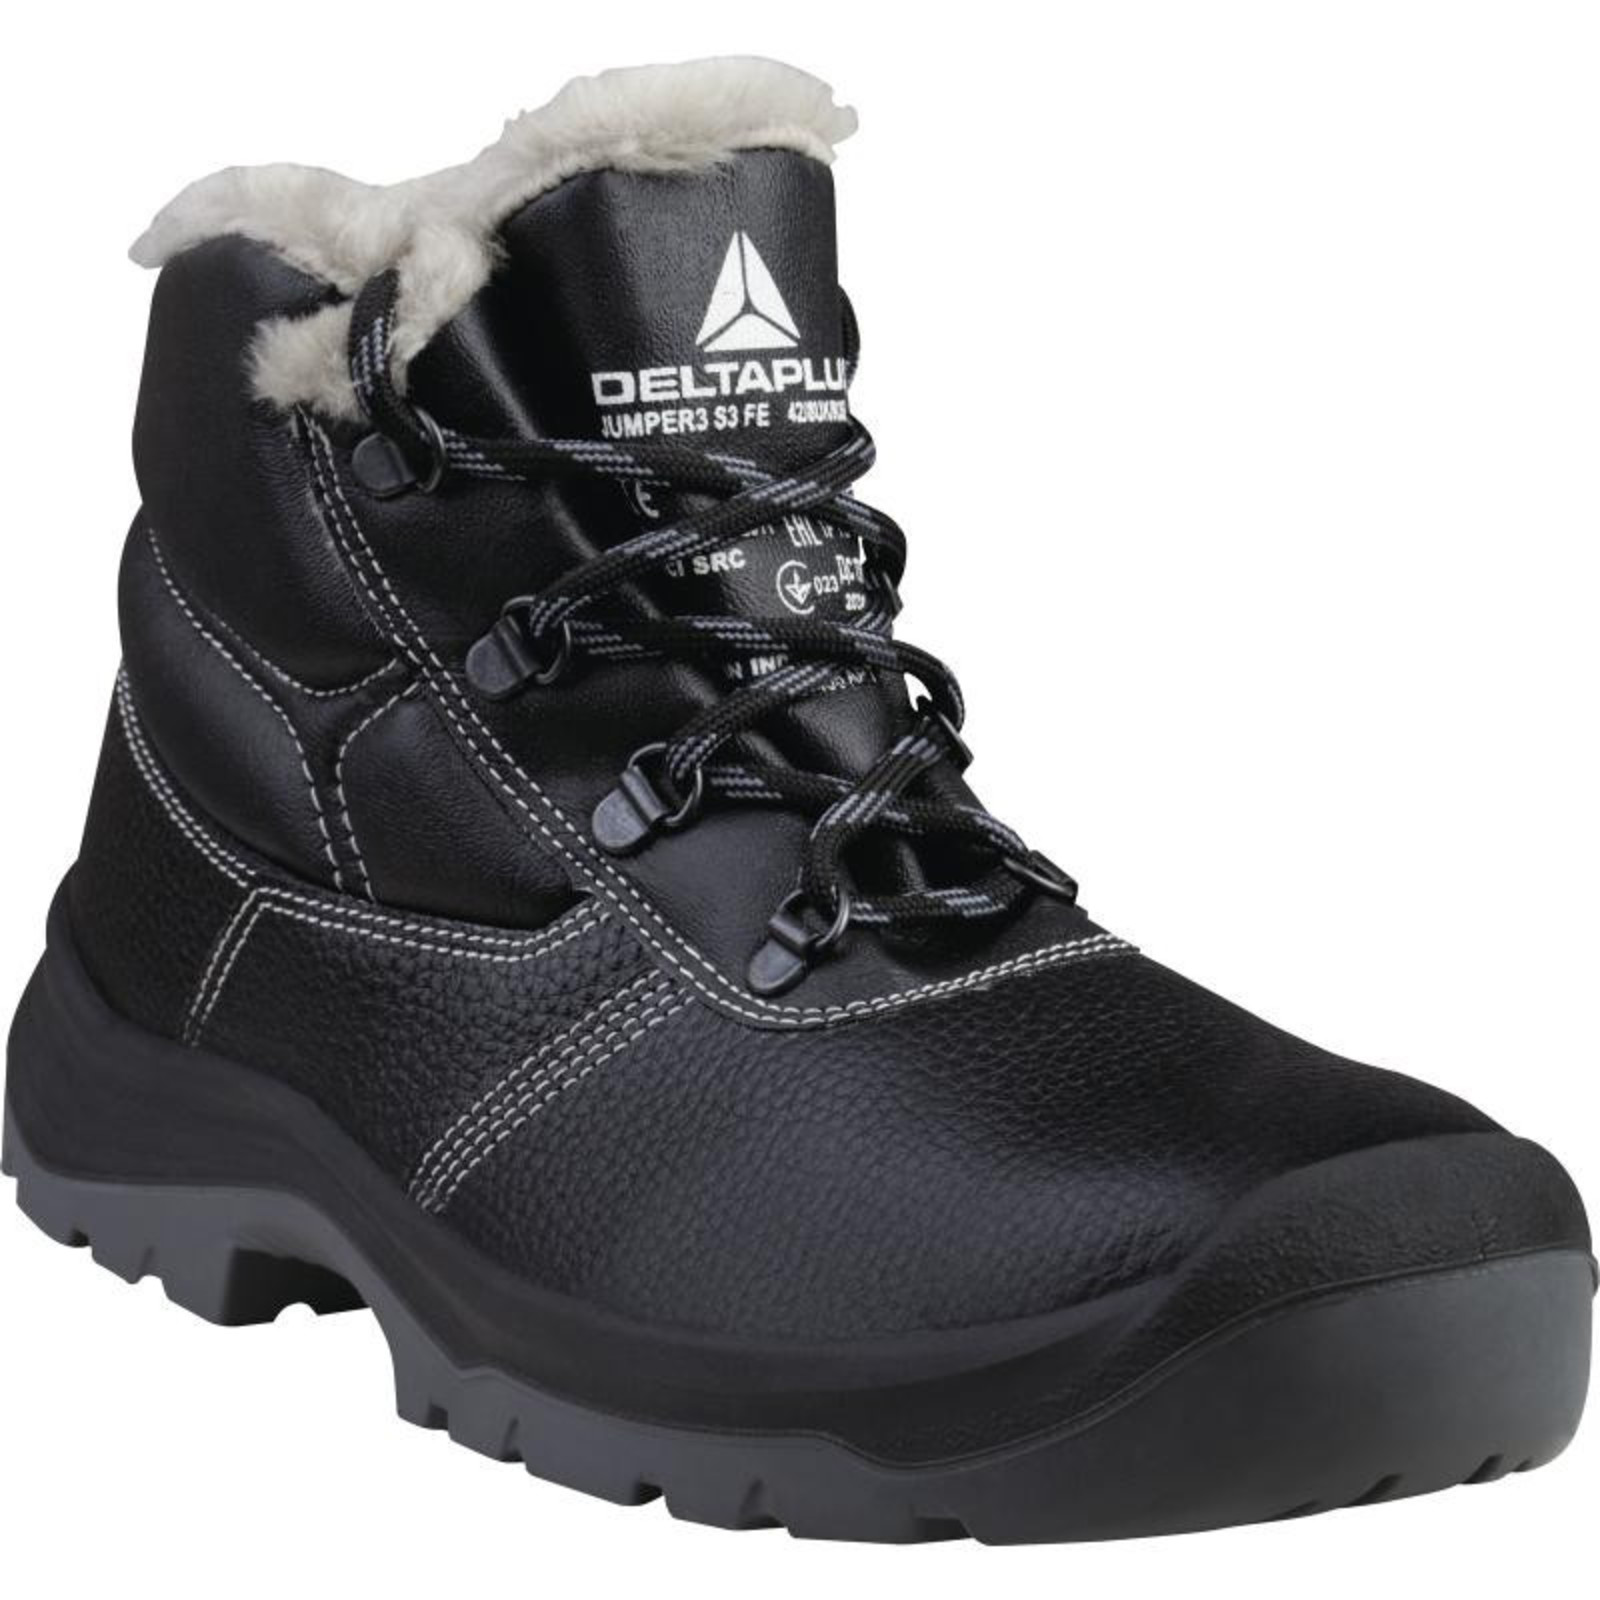 Zimná členková bezpečnostná obuv Delta Plus Jumper3 S3 - veľkosť: 44, farba: čierna